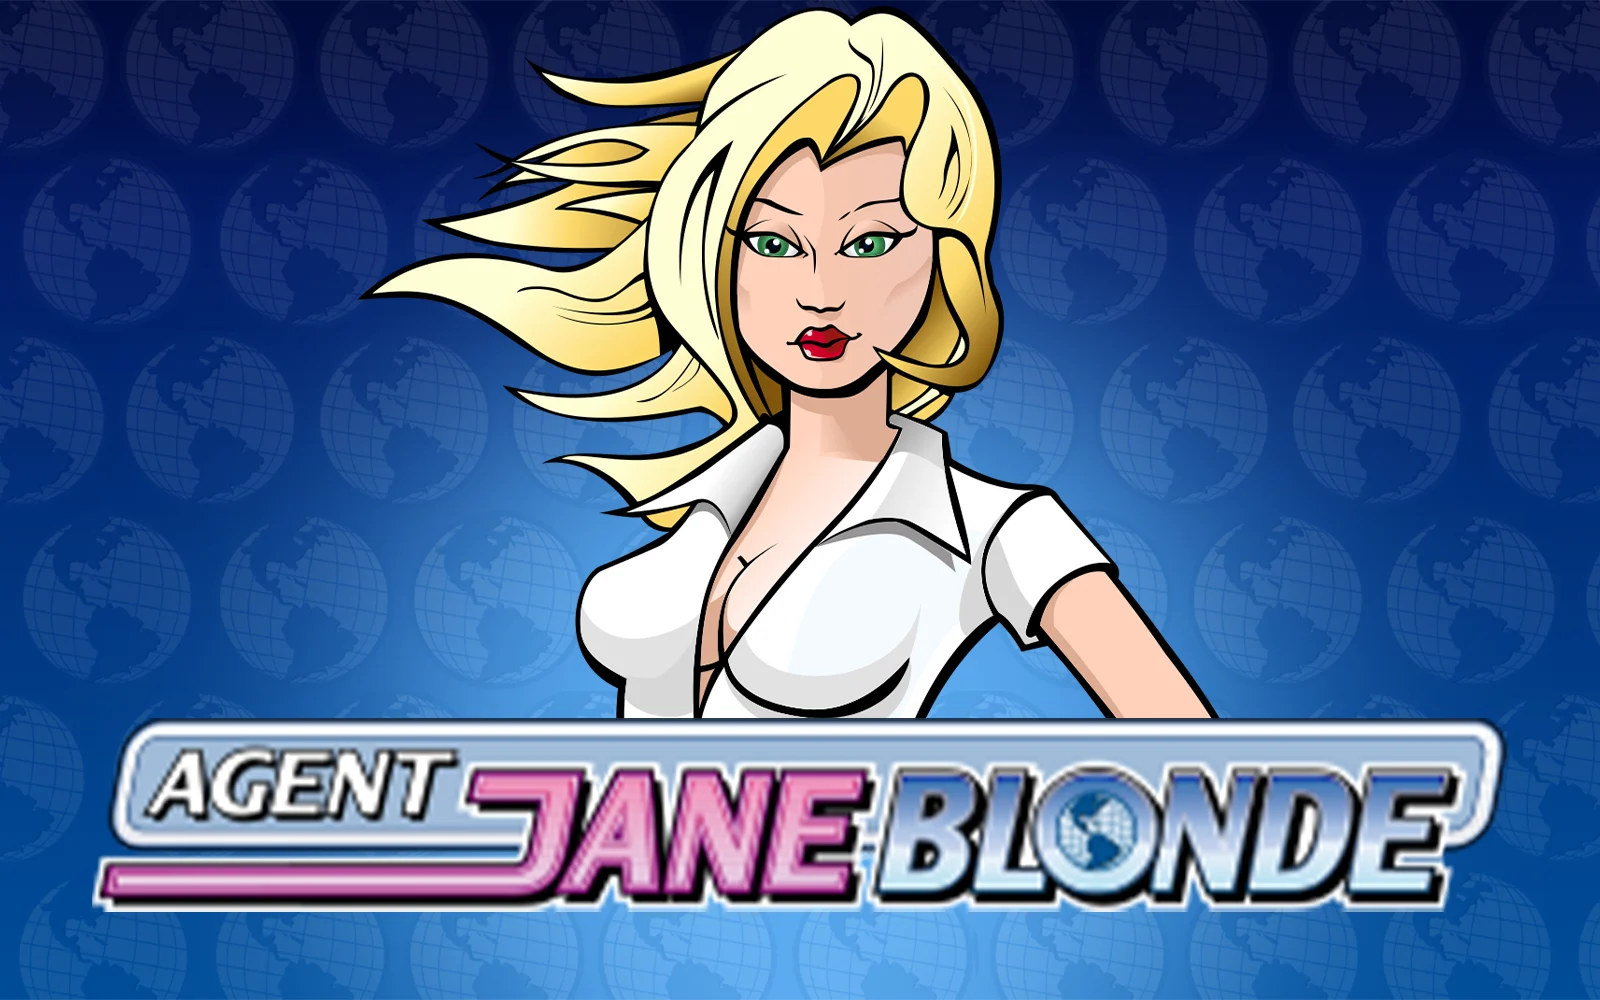 Starcasino.be online casino üzerinden Agent Jane Blonde oynayın